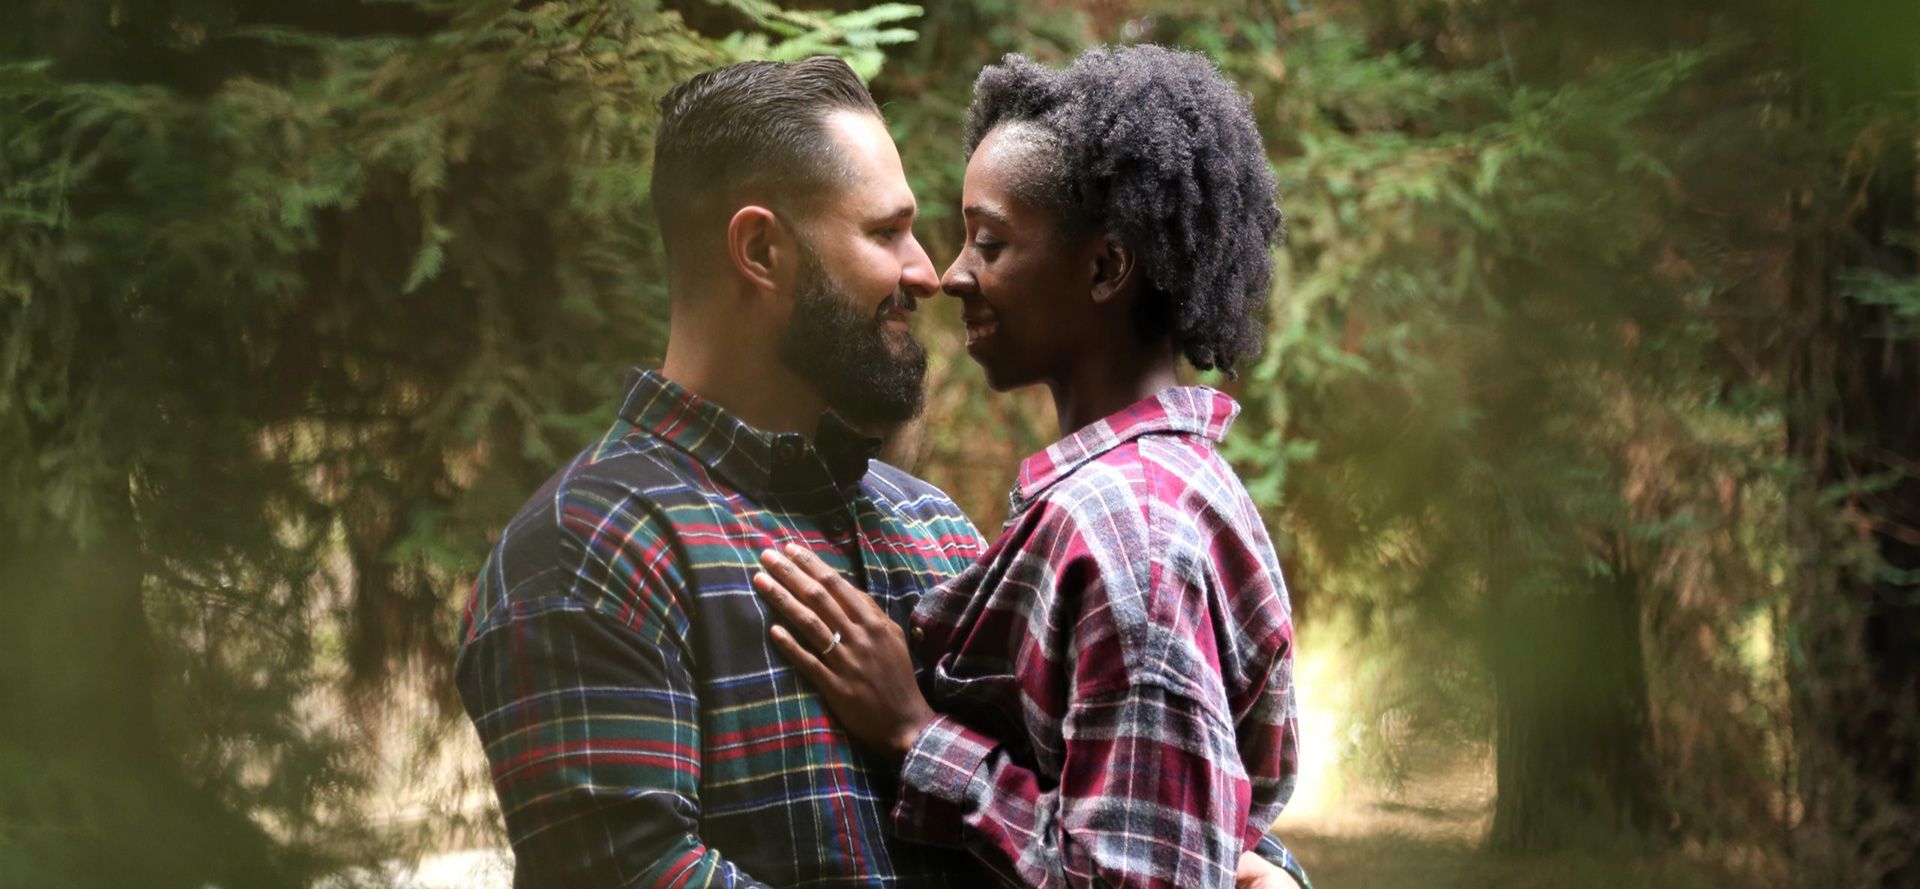 Hvid mand og sort kvinde på date i skoven.